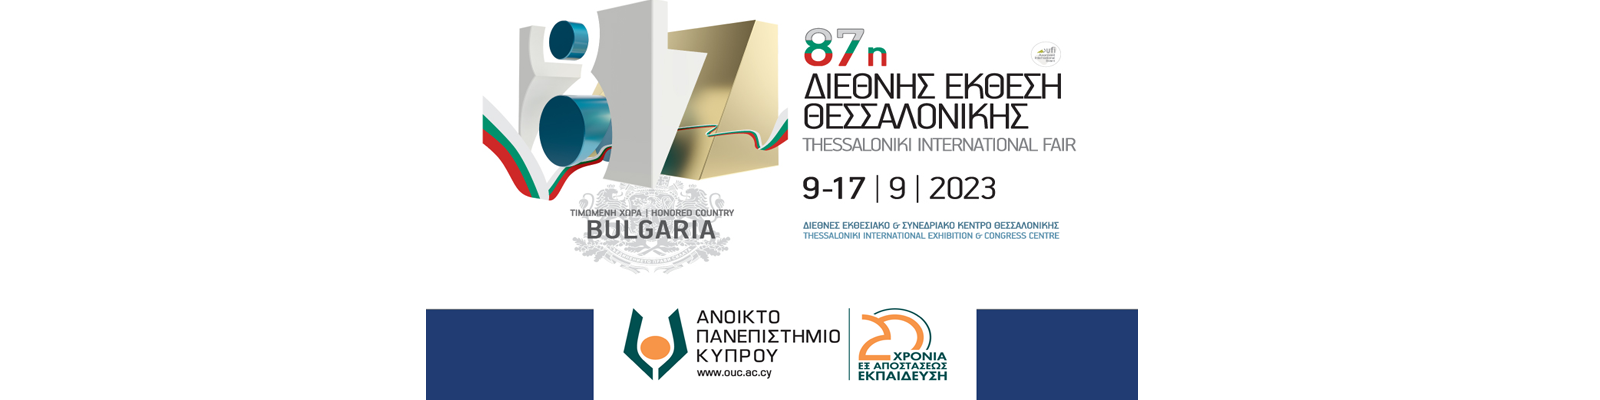 Το ΑΠΚΥ στην 87η Διεθνή Έκθεση Θεσσαλονίκης (ΔΕΘ) από 9 έως 17 Σεπτεμβρίου 2023